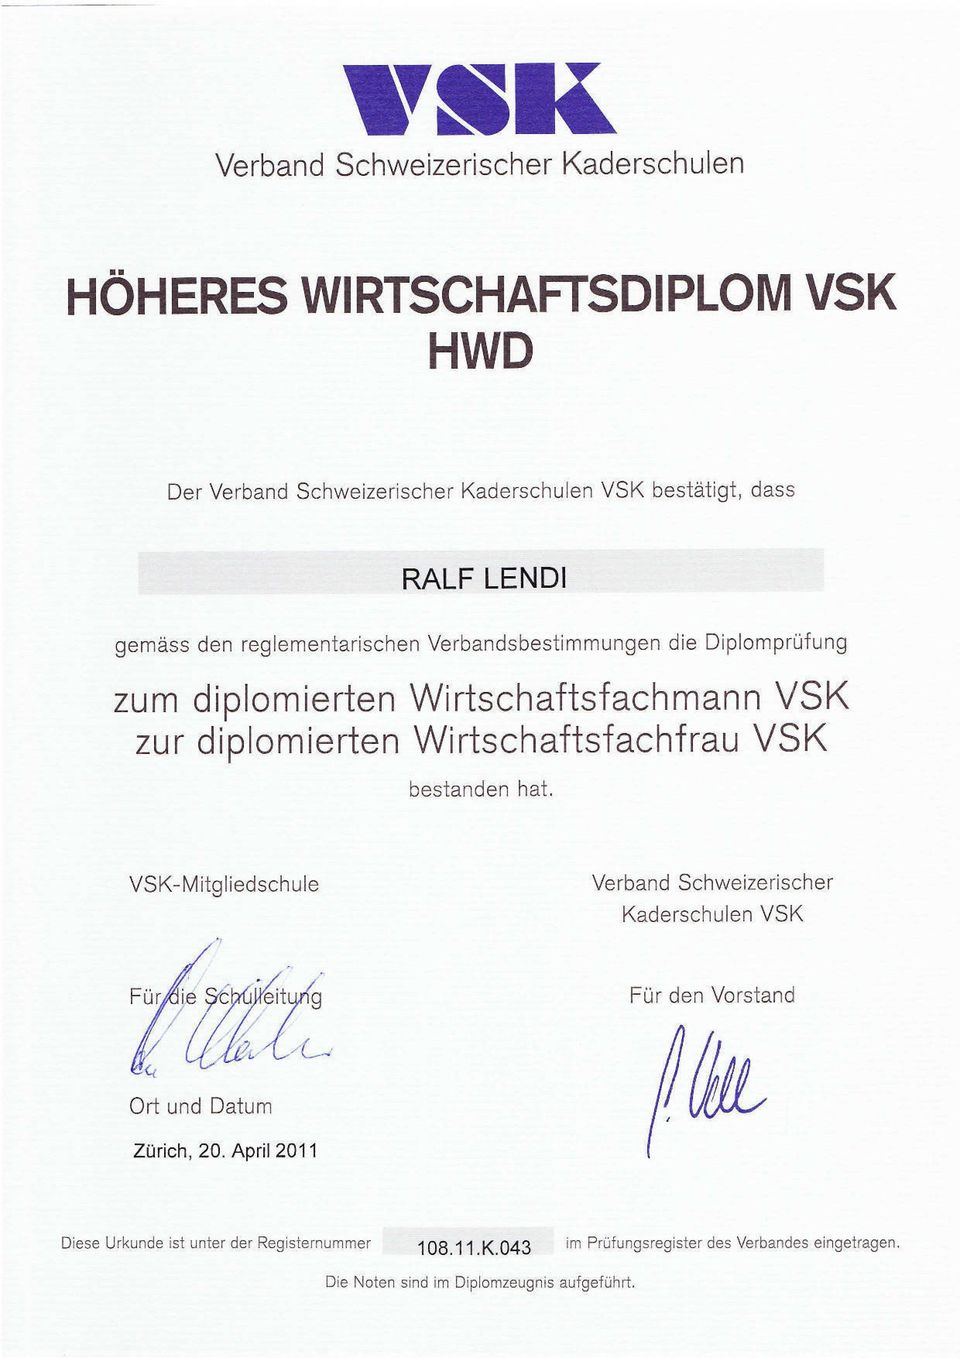 Wirtschaftsfachfrau VSK bestanden hat, VSK-Mitgliedschule Verband Schweizerischer Kaderschulen VSK Fur den Vorstand Ort und Datum Zürich, 20.